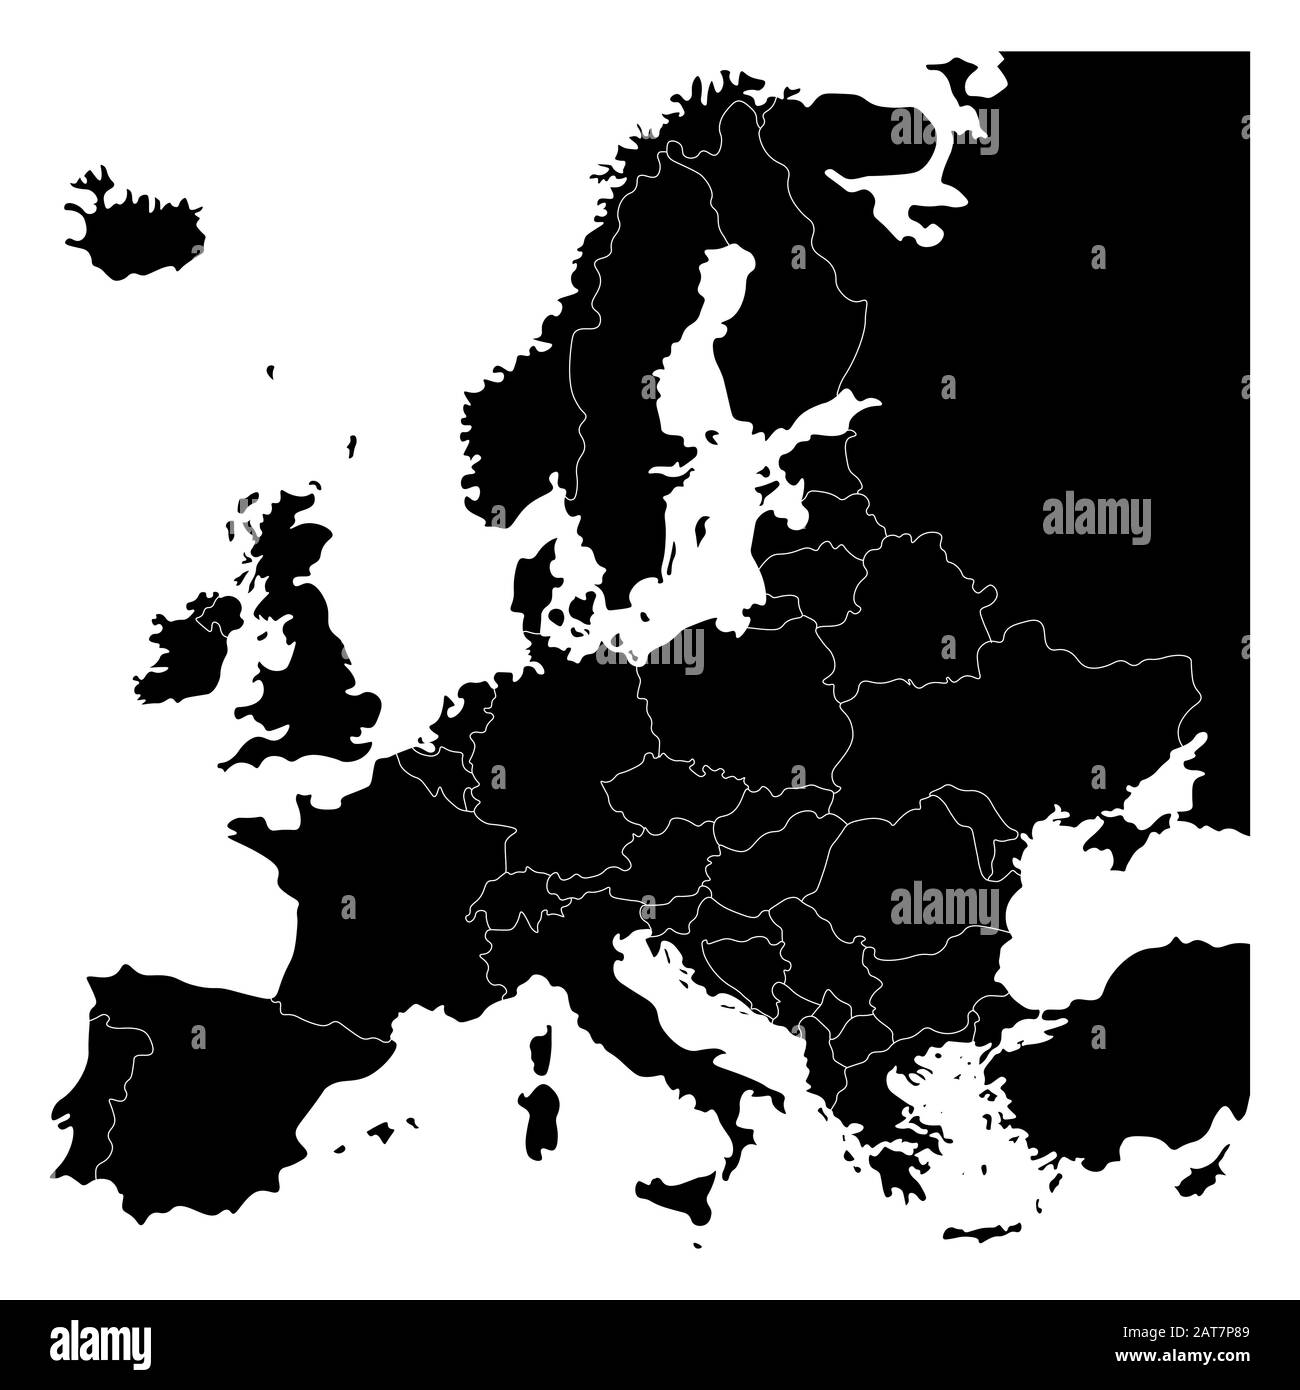 Mappa del continente europeo. Confini nazionali ed europa. Immagine vettoriale isolata in colore nero. Illustrazione Vettoriale